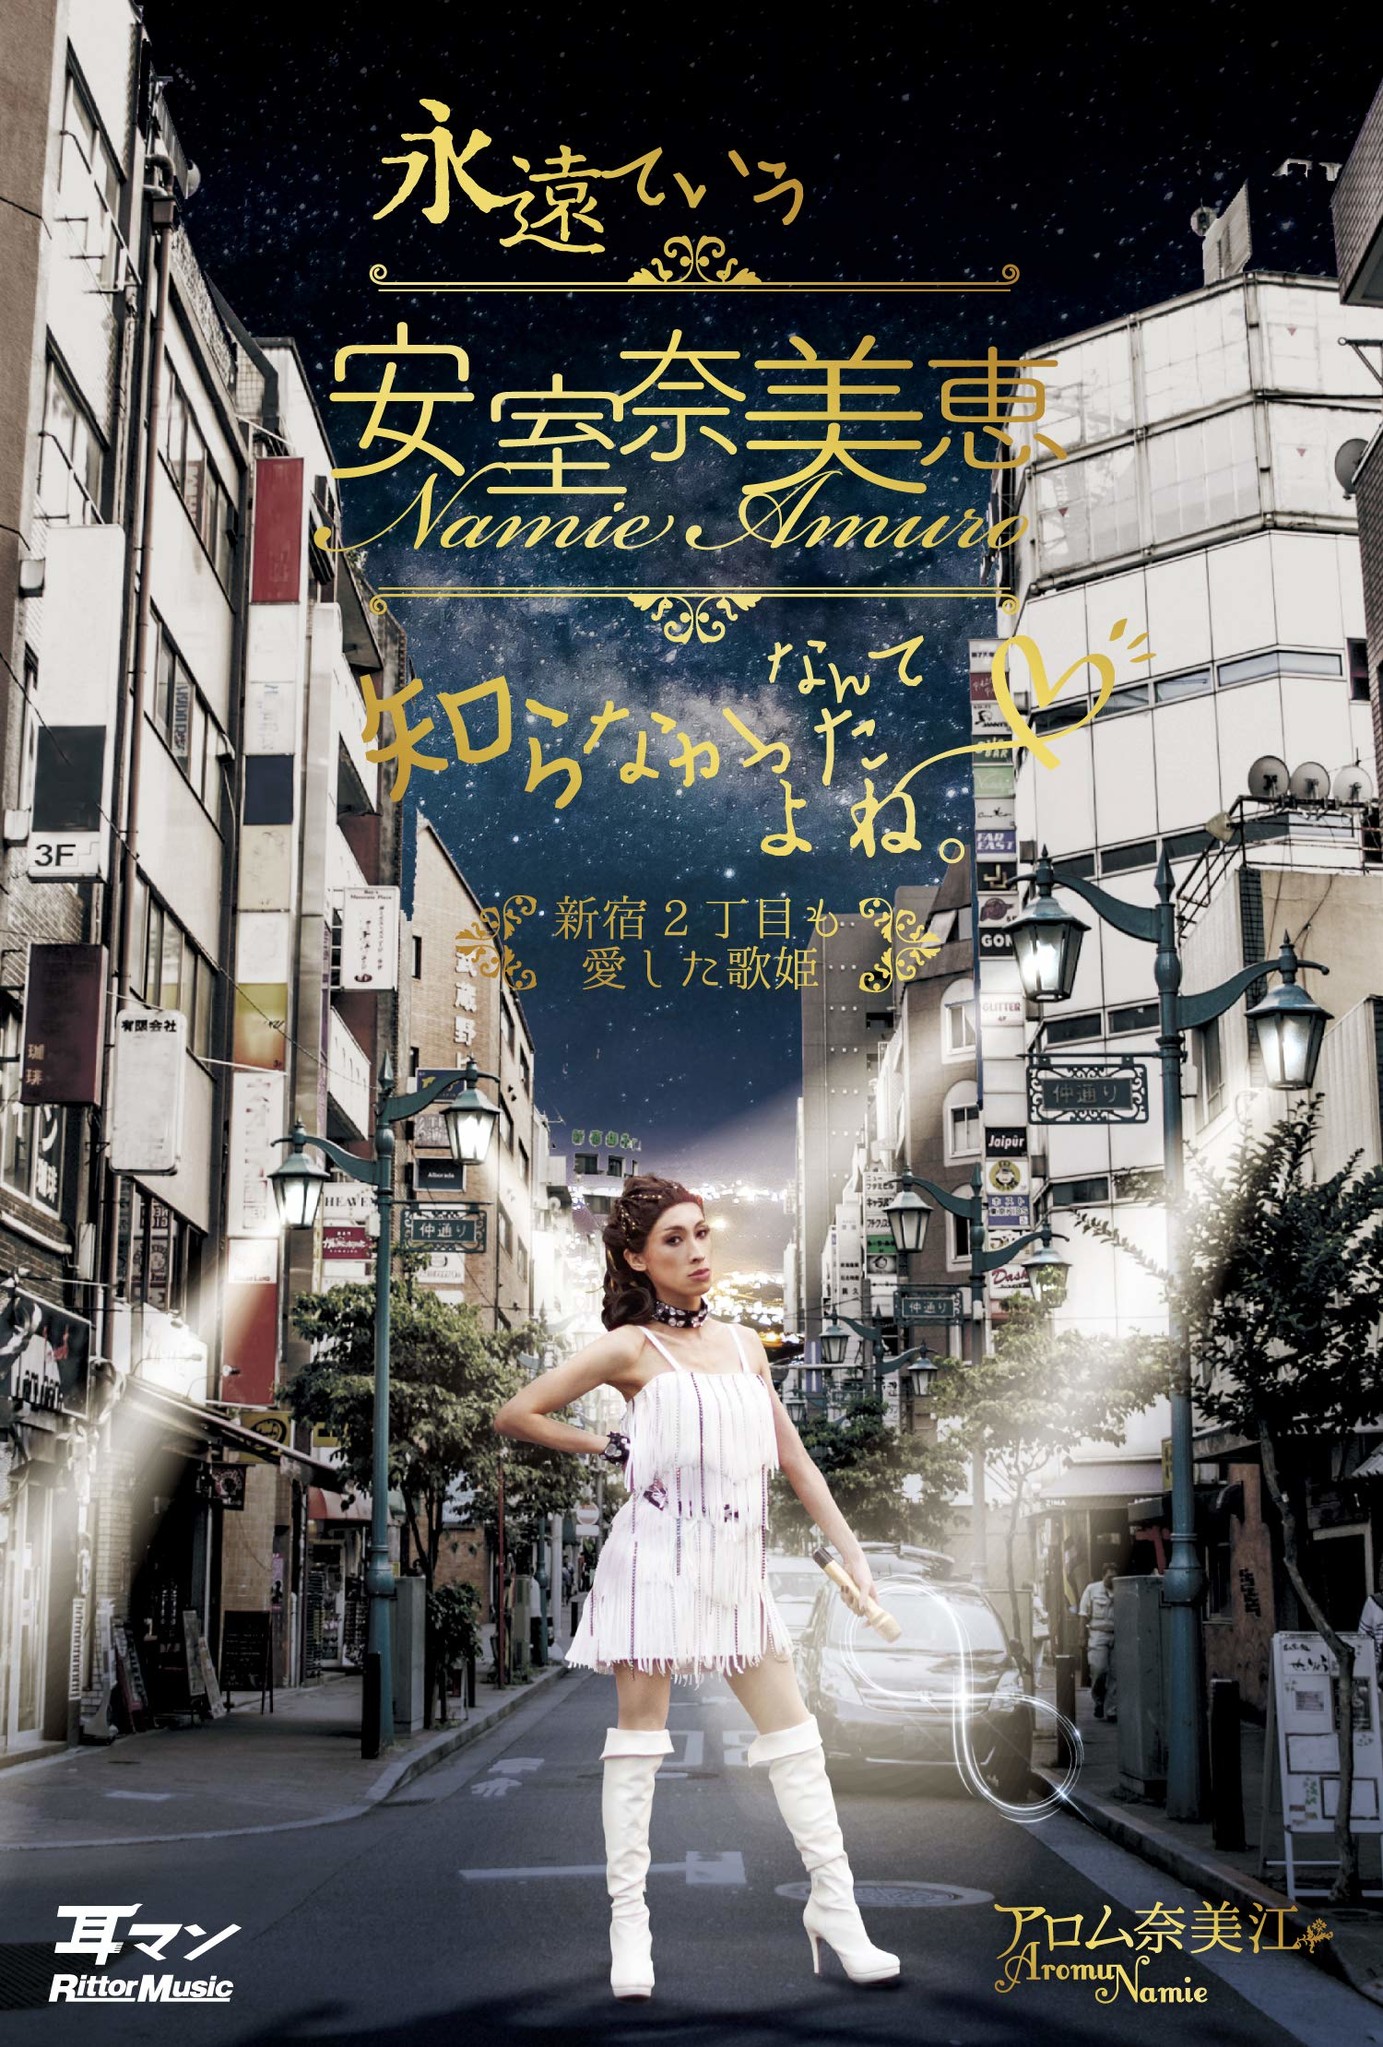 安室奈美恵の音楽に対する思いがぎっしり 改名までしたオネエが綴るボーダレスなアムロ愛 株式会社インプレスホールディングスのプレスリリース